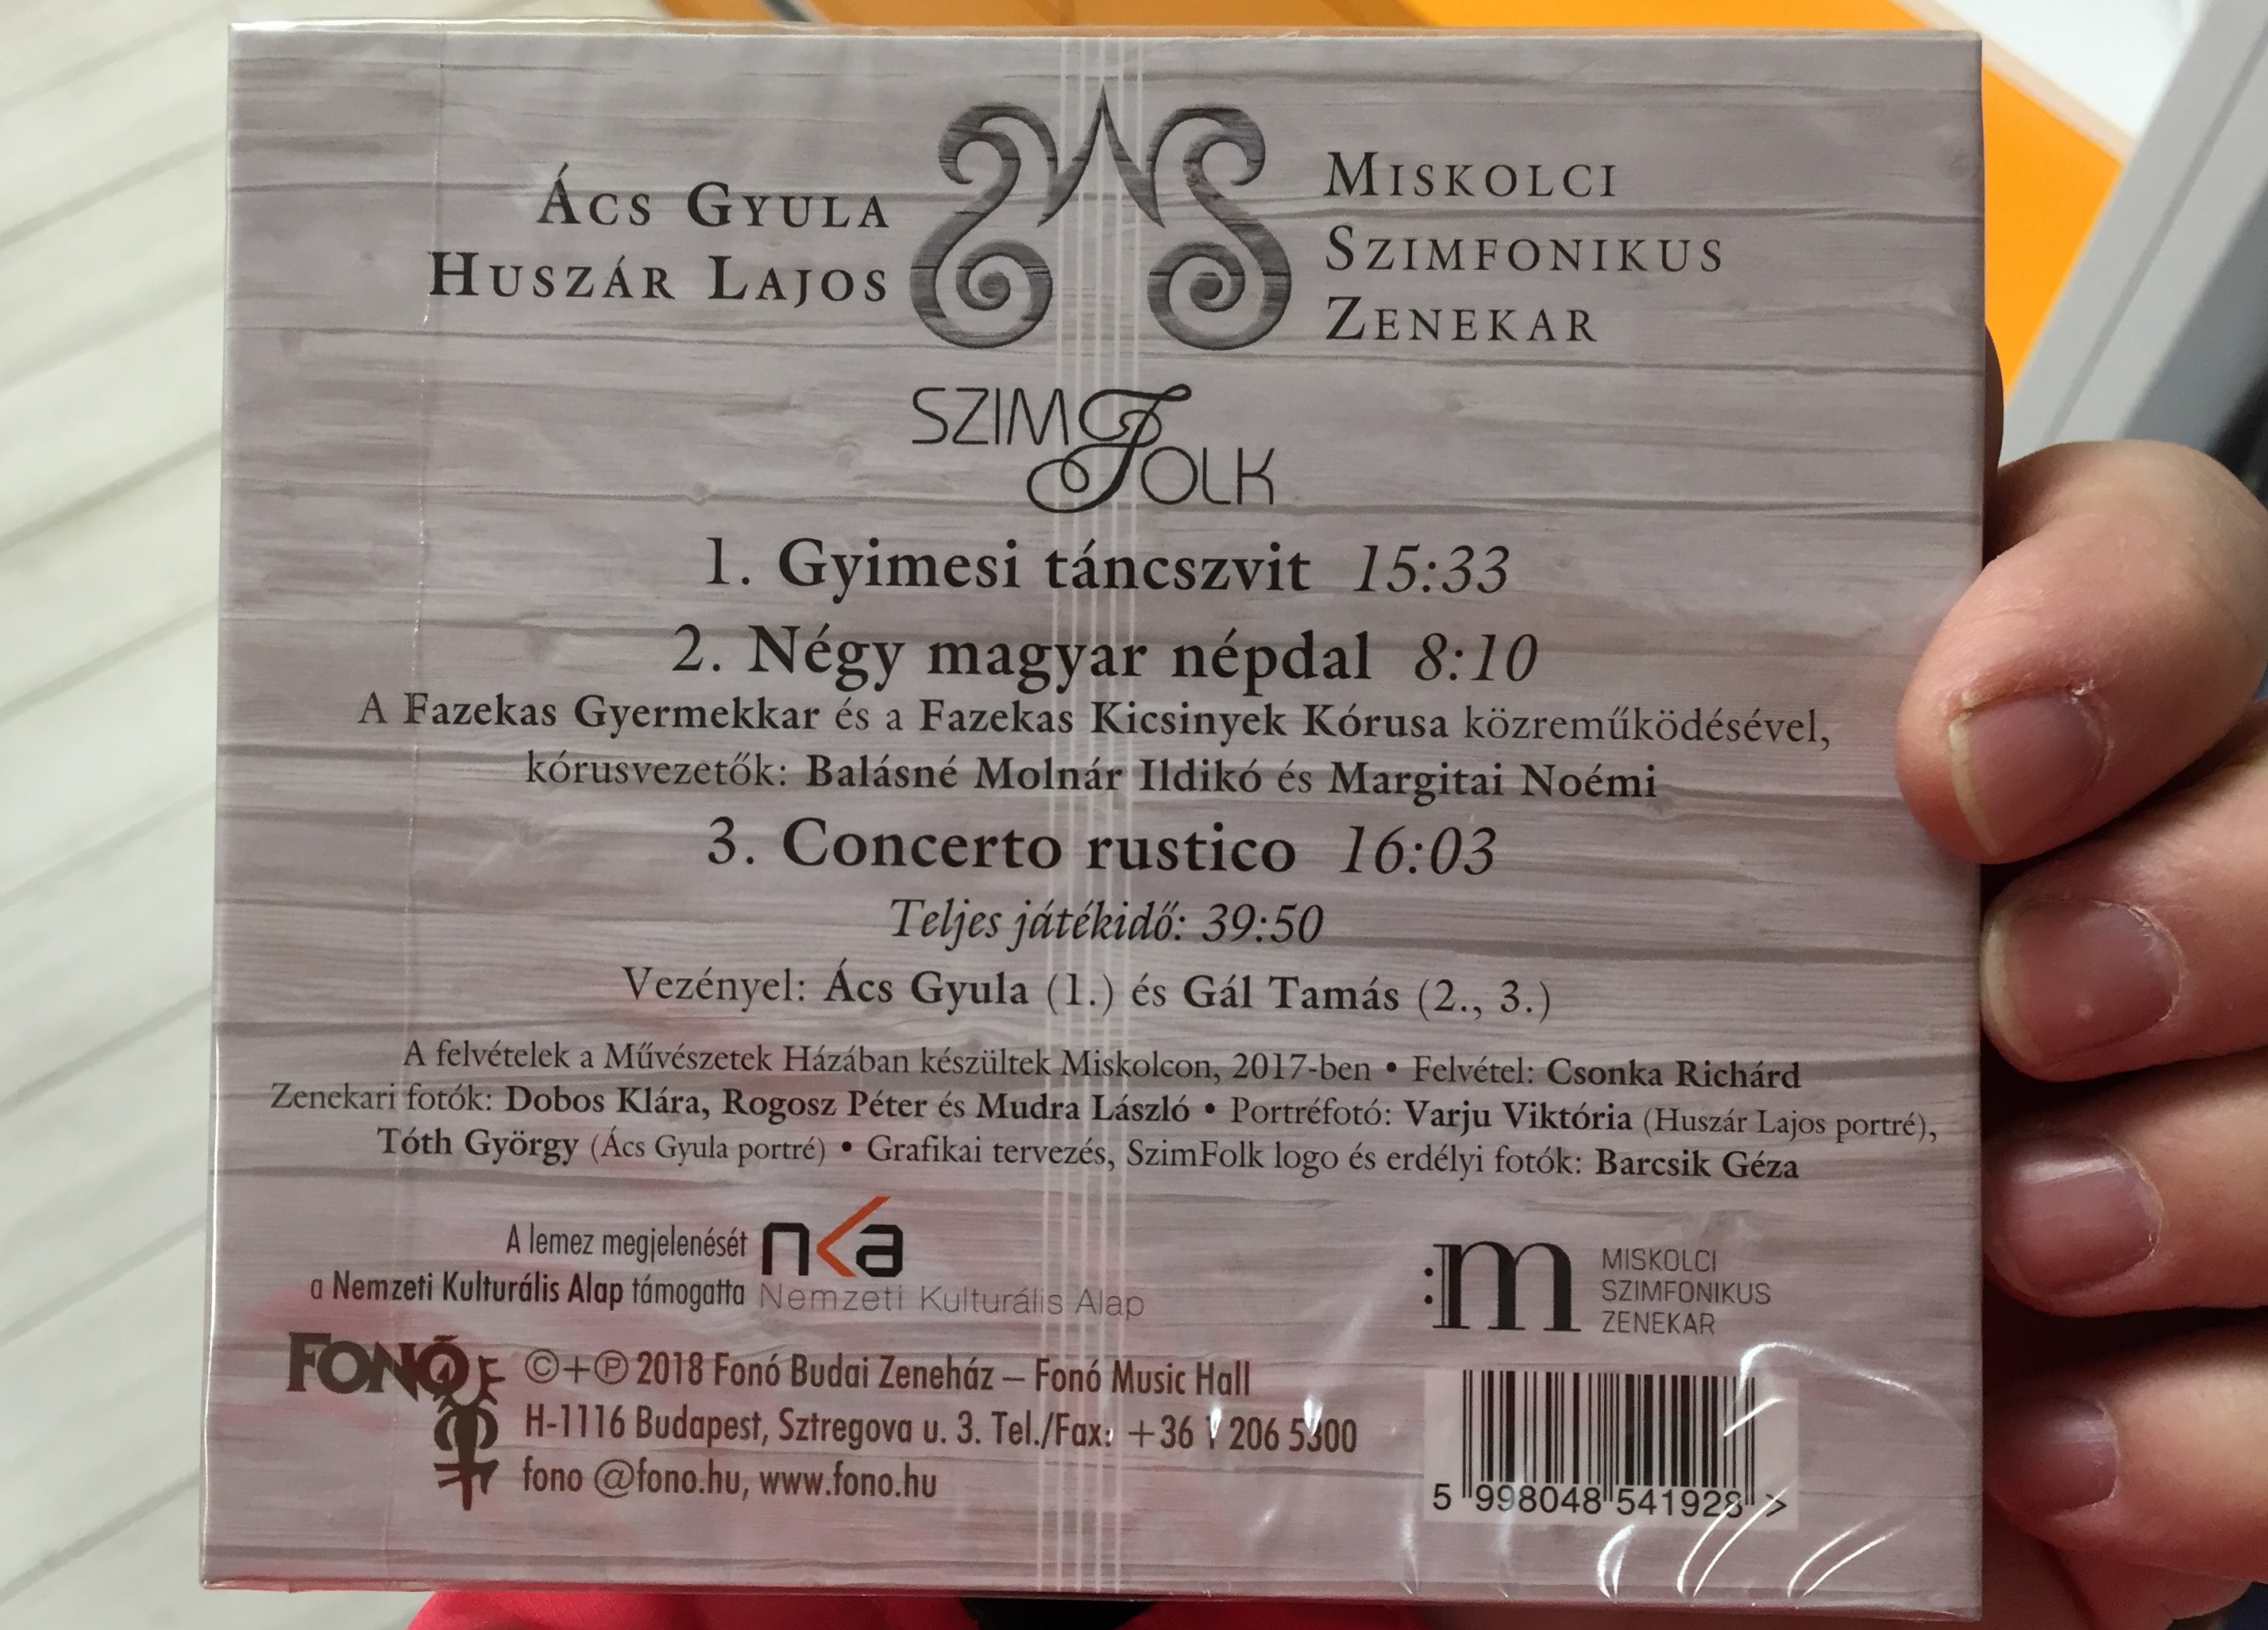 acs-gyula-huszar-lajos-szim-folk-miskolci-szimfonikus-zenekar-fon-budai-zeneh-z-audio-cd-2018-5998048541928-2-.jpg